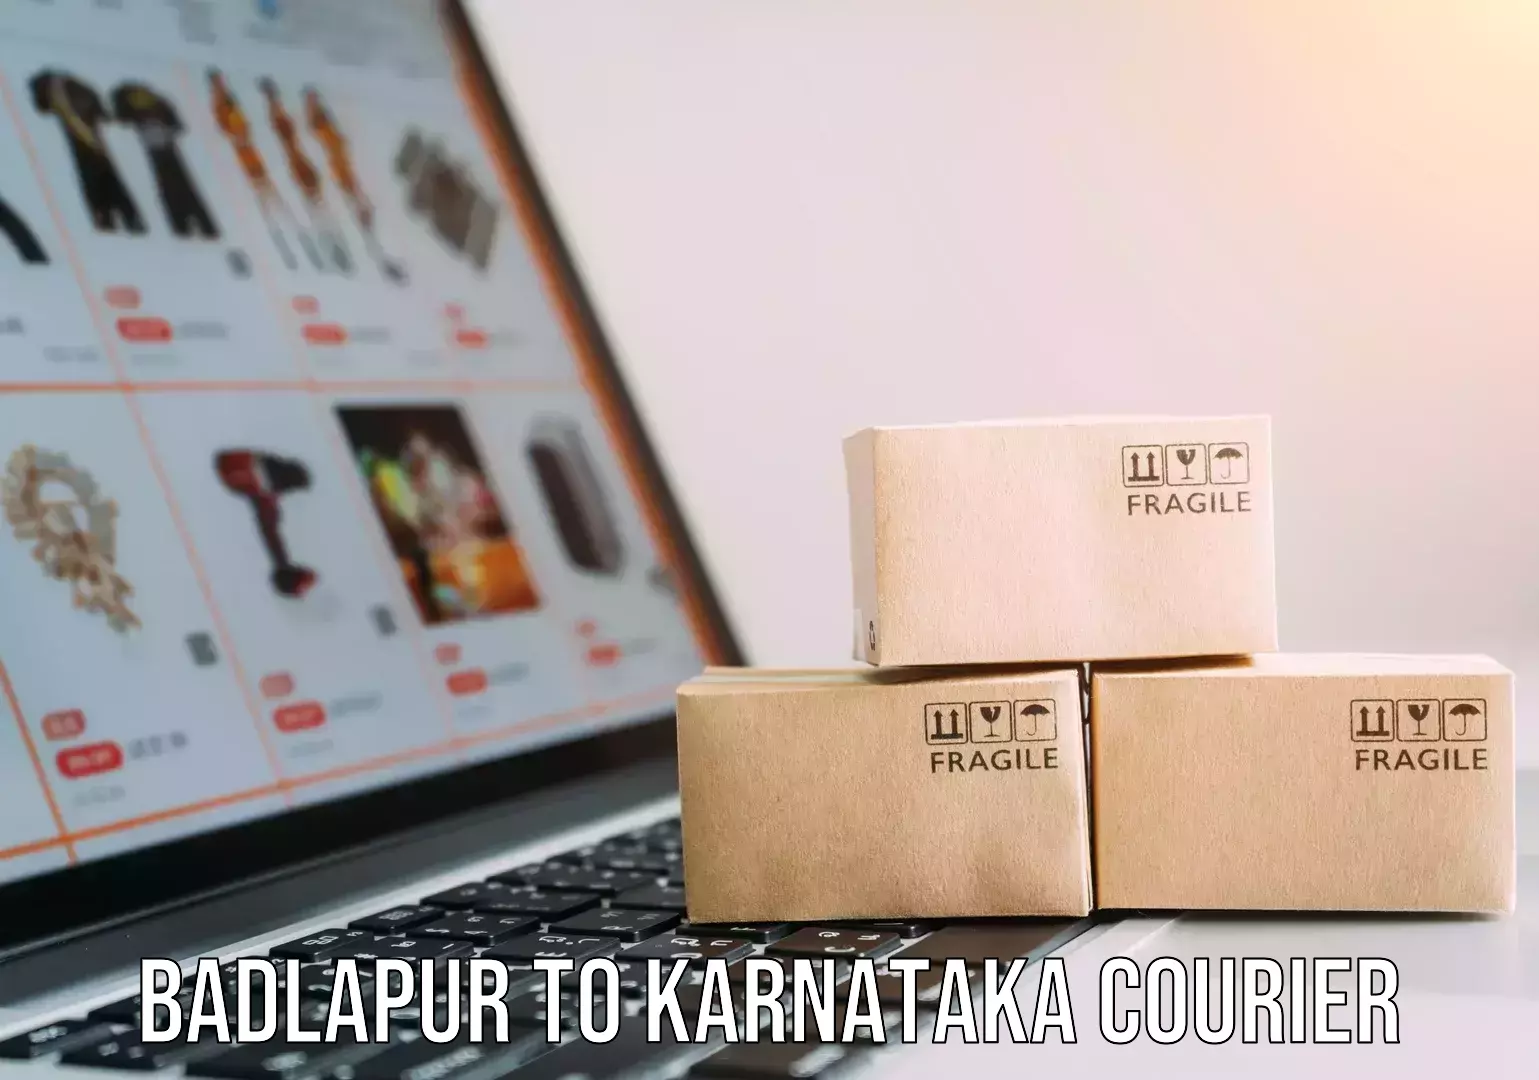 Courier dispatch services Badlapur to Karnataka